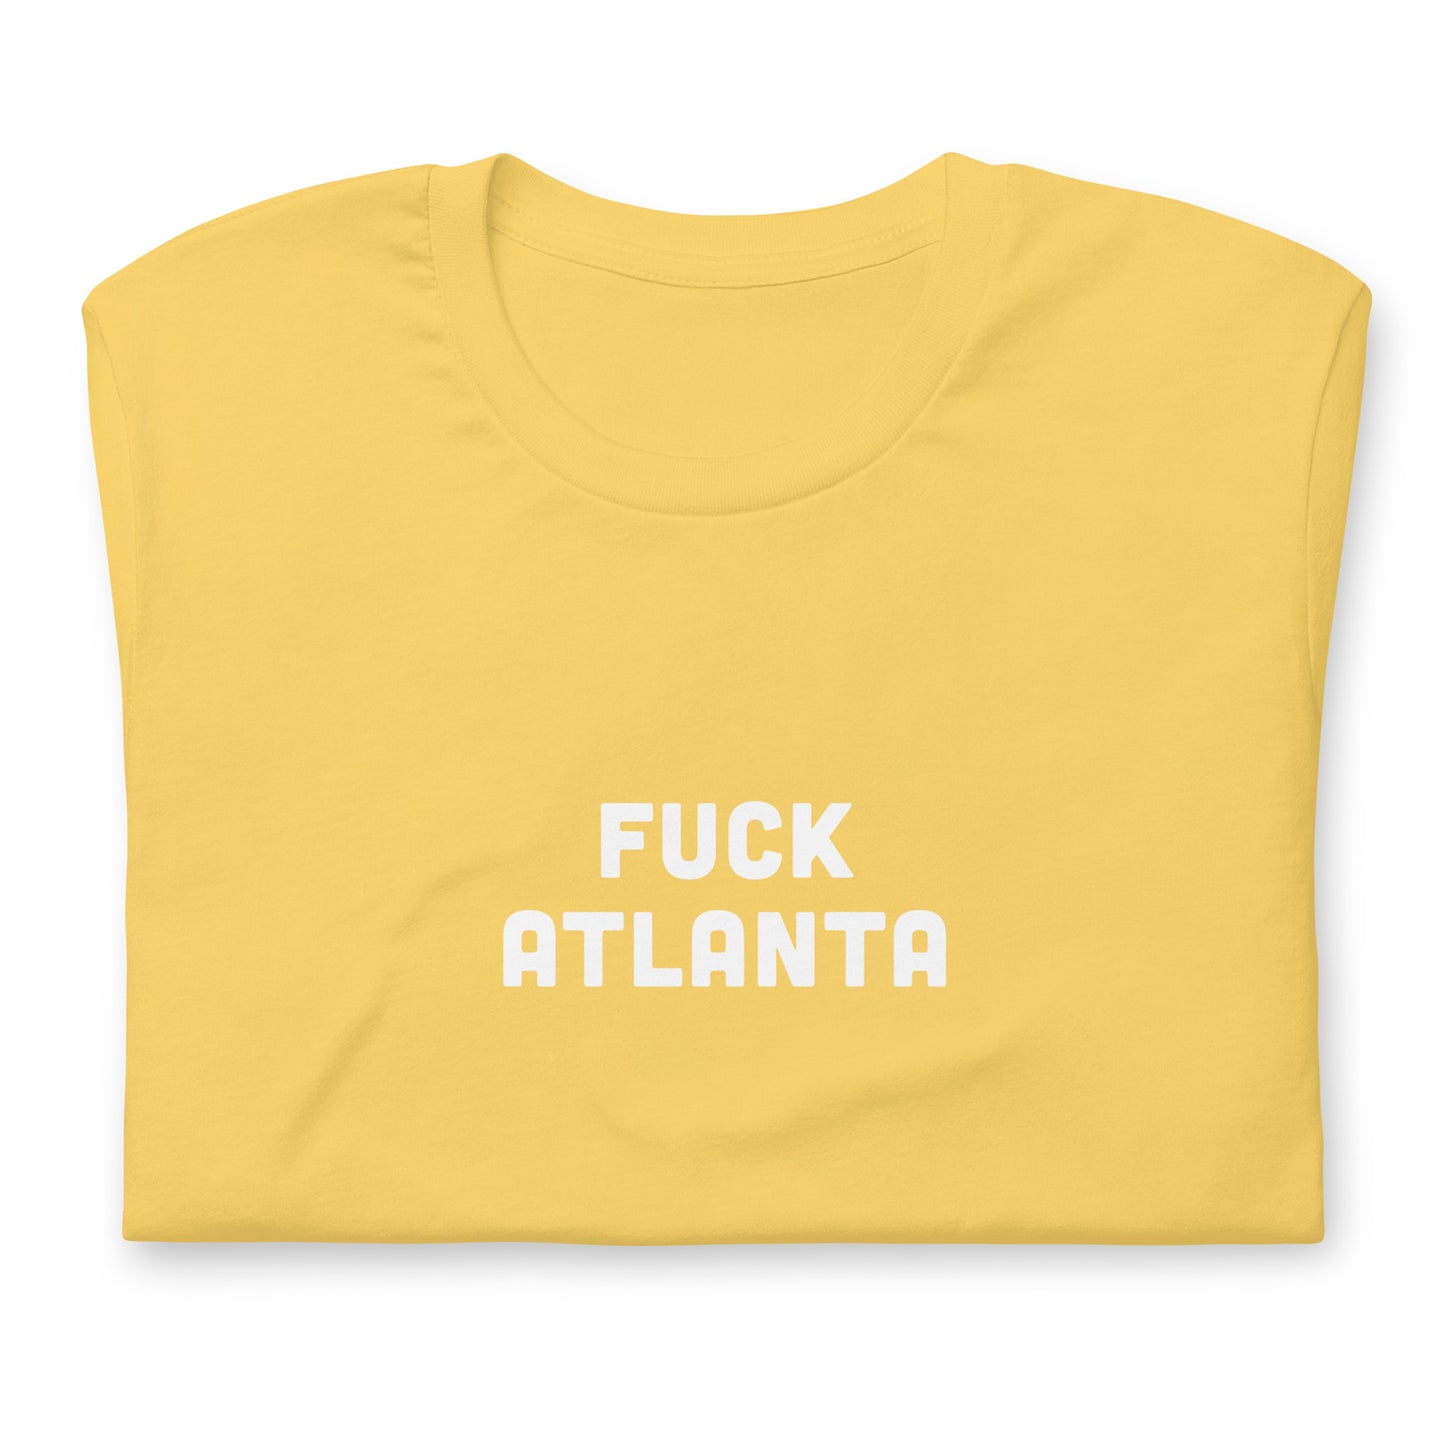 Fuck Atlanta T-Shirt Size 2XL Color Asphalt